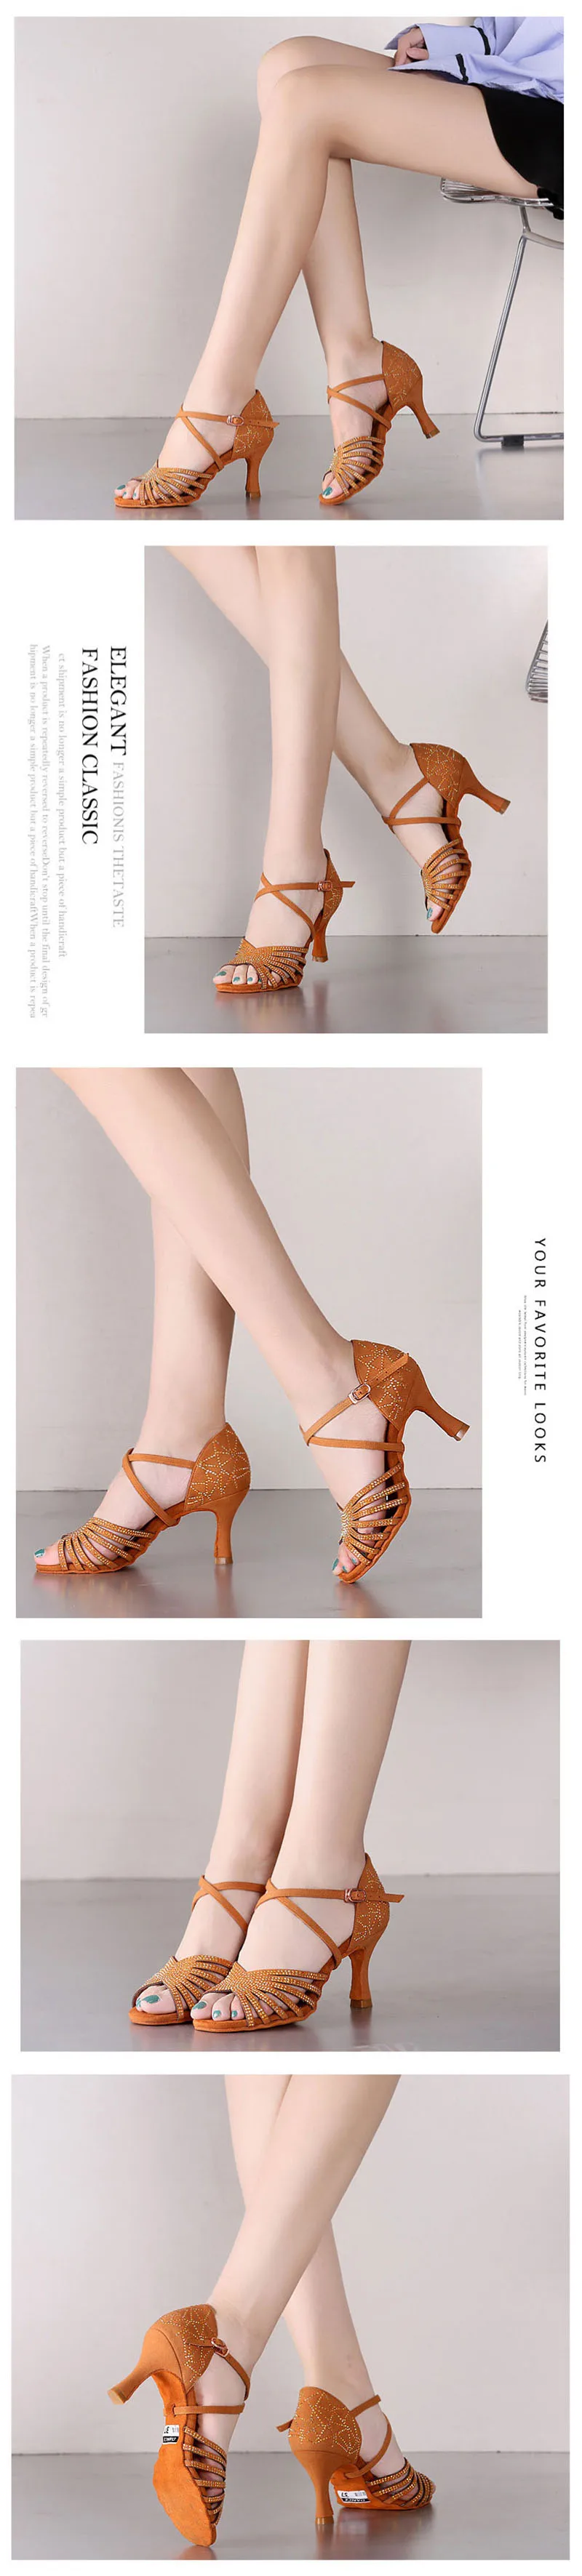 USHINE BD211 Каблук 7,5 см, шелковый атлас, абрикосовый, коричневый цвет, туфли для латинских танцев, цвет шампанского, стразы, сальса, обувь для латинских танцев, женская обувь